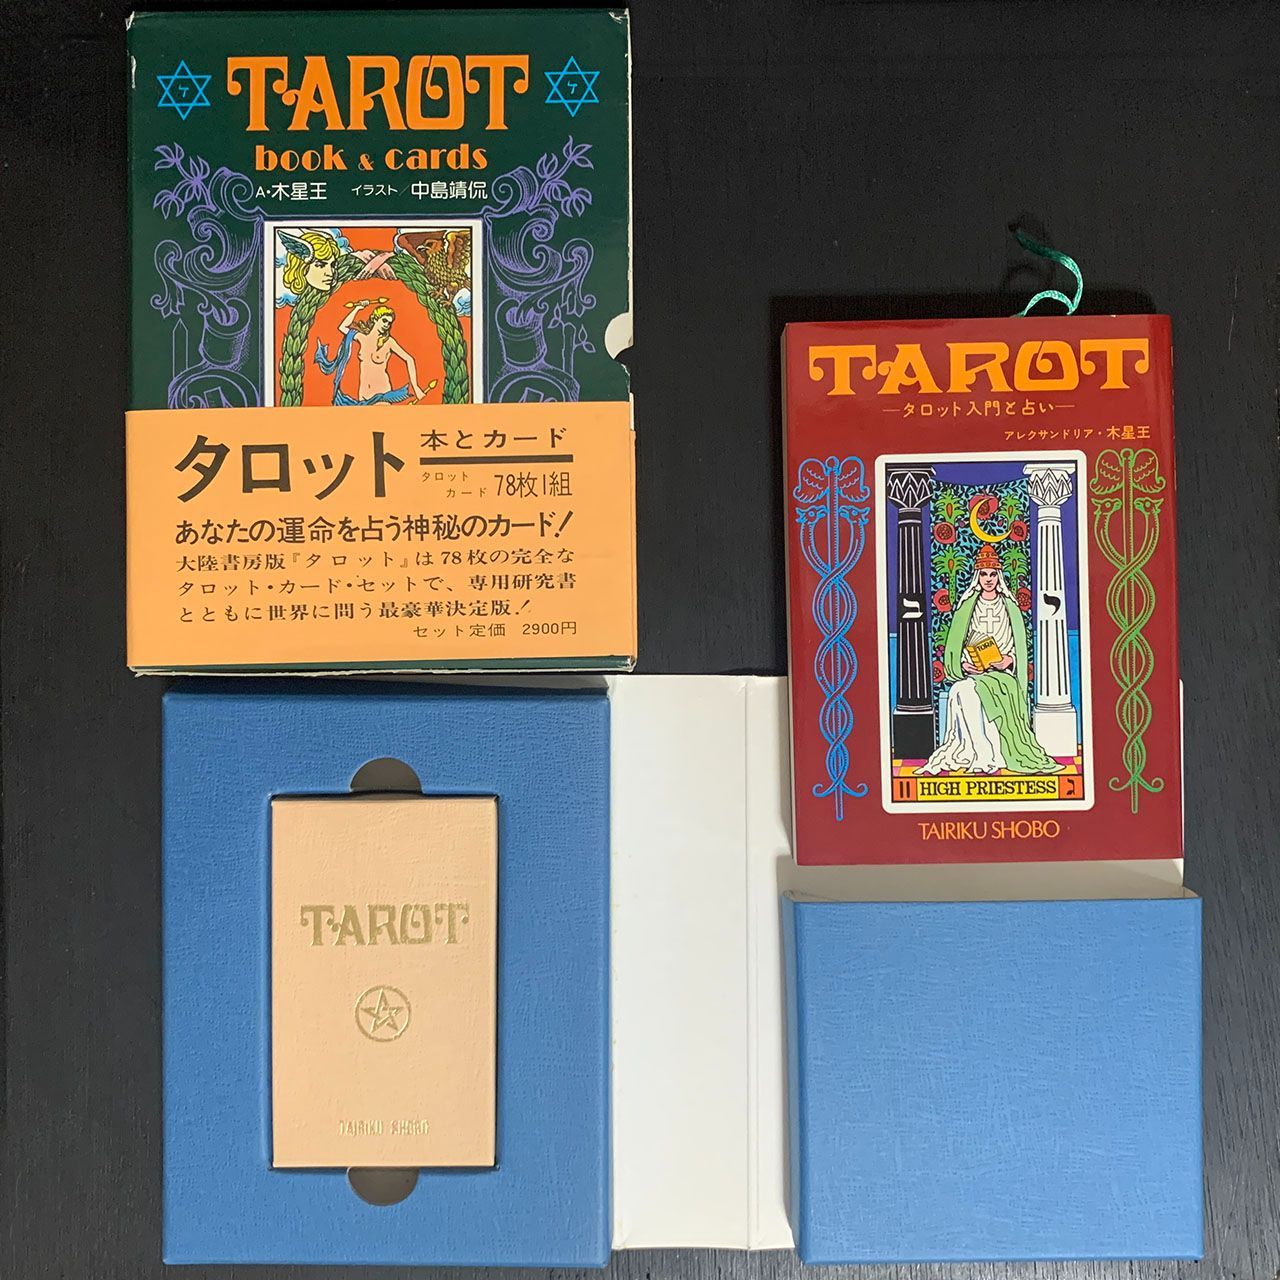 タロット TAROT book & cards アレクサンドリア・木星王 - あべの古 